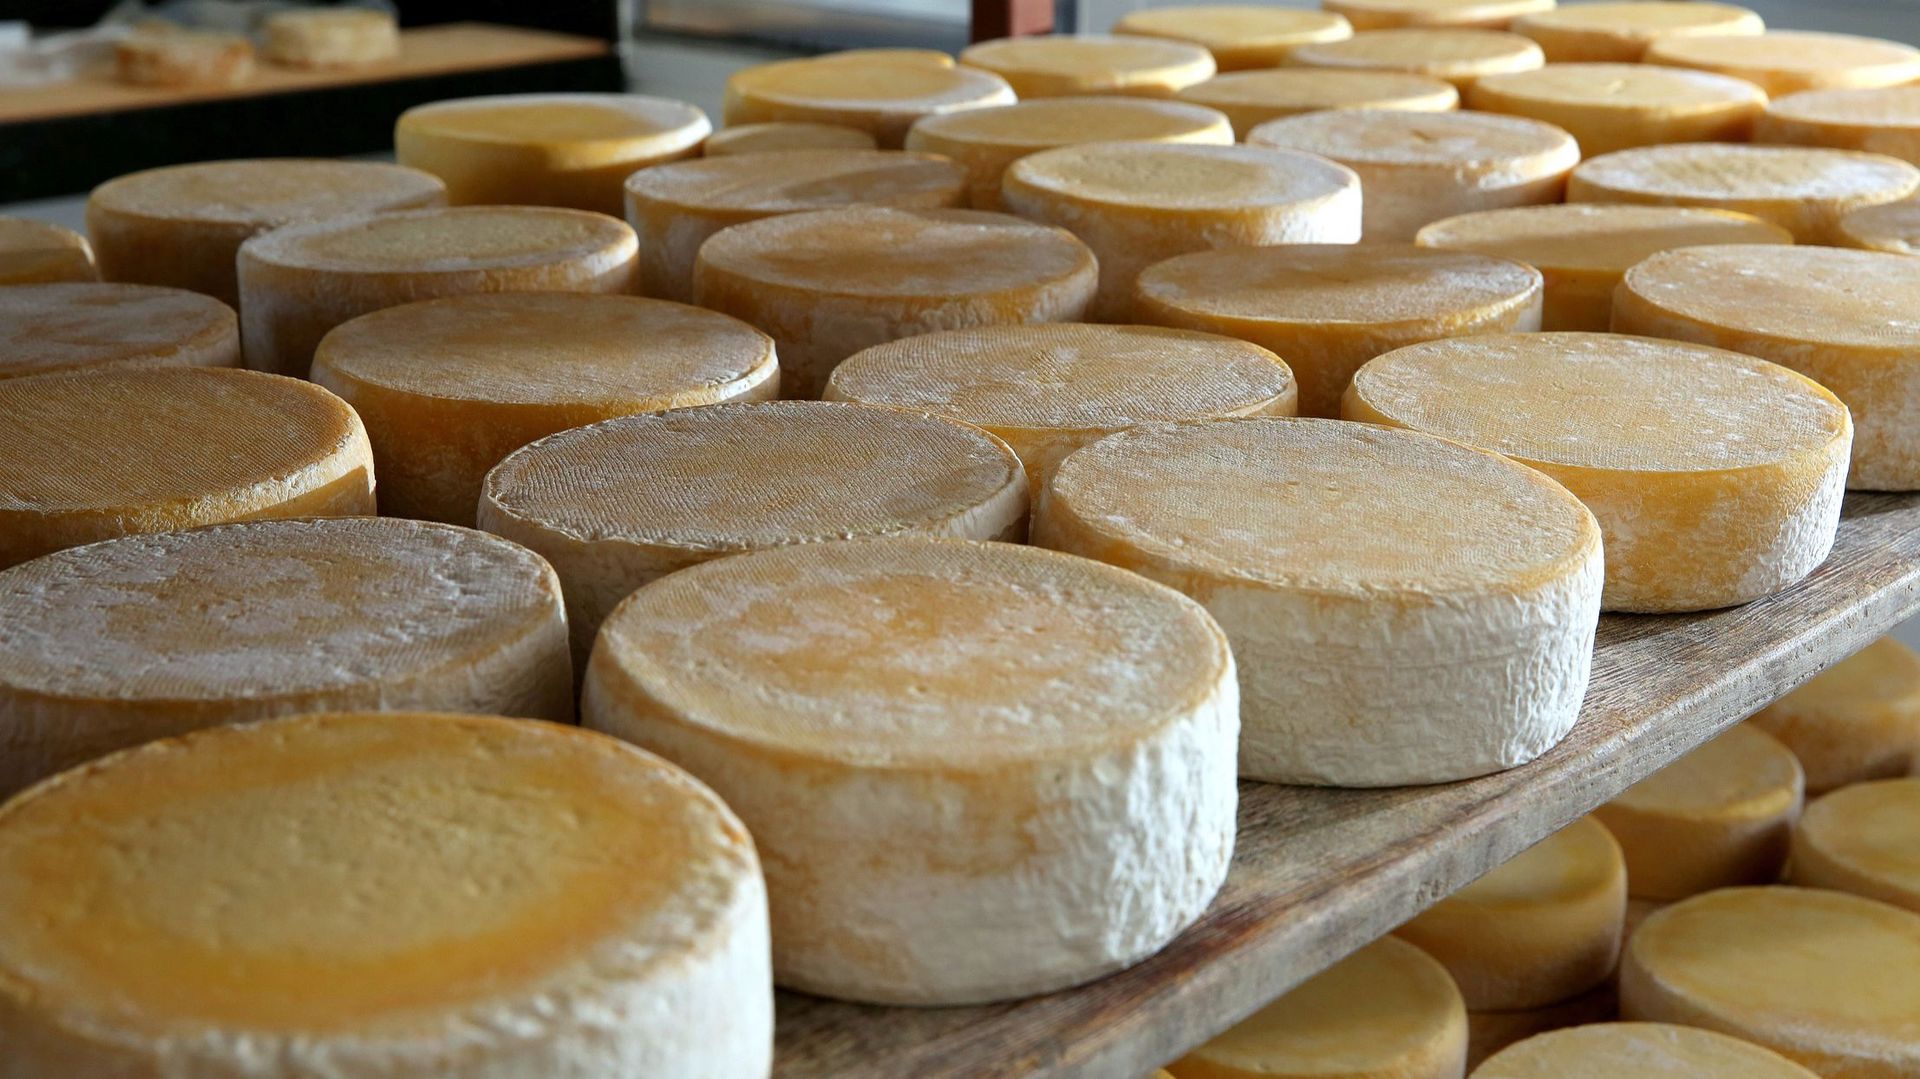 Des fromages jetés hier ne le seraient plus aujourd'hui selon les nouvelles normes